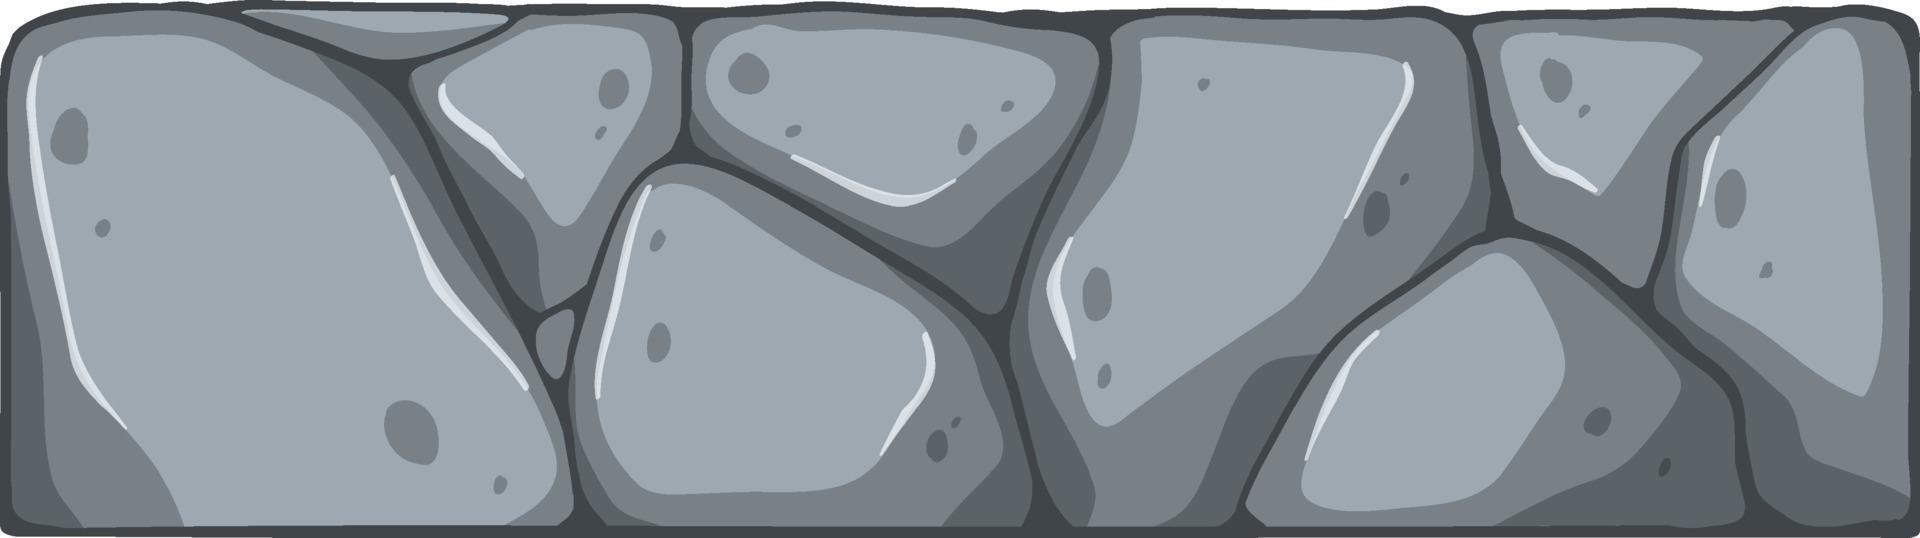 Ladrillo de piedra aislado en estilo de dibujos animados vector